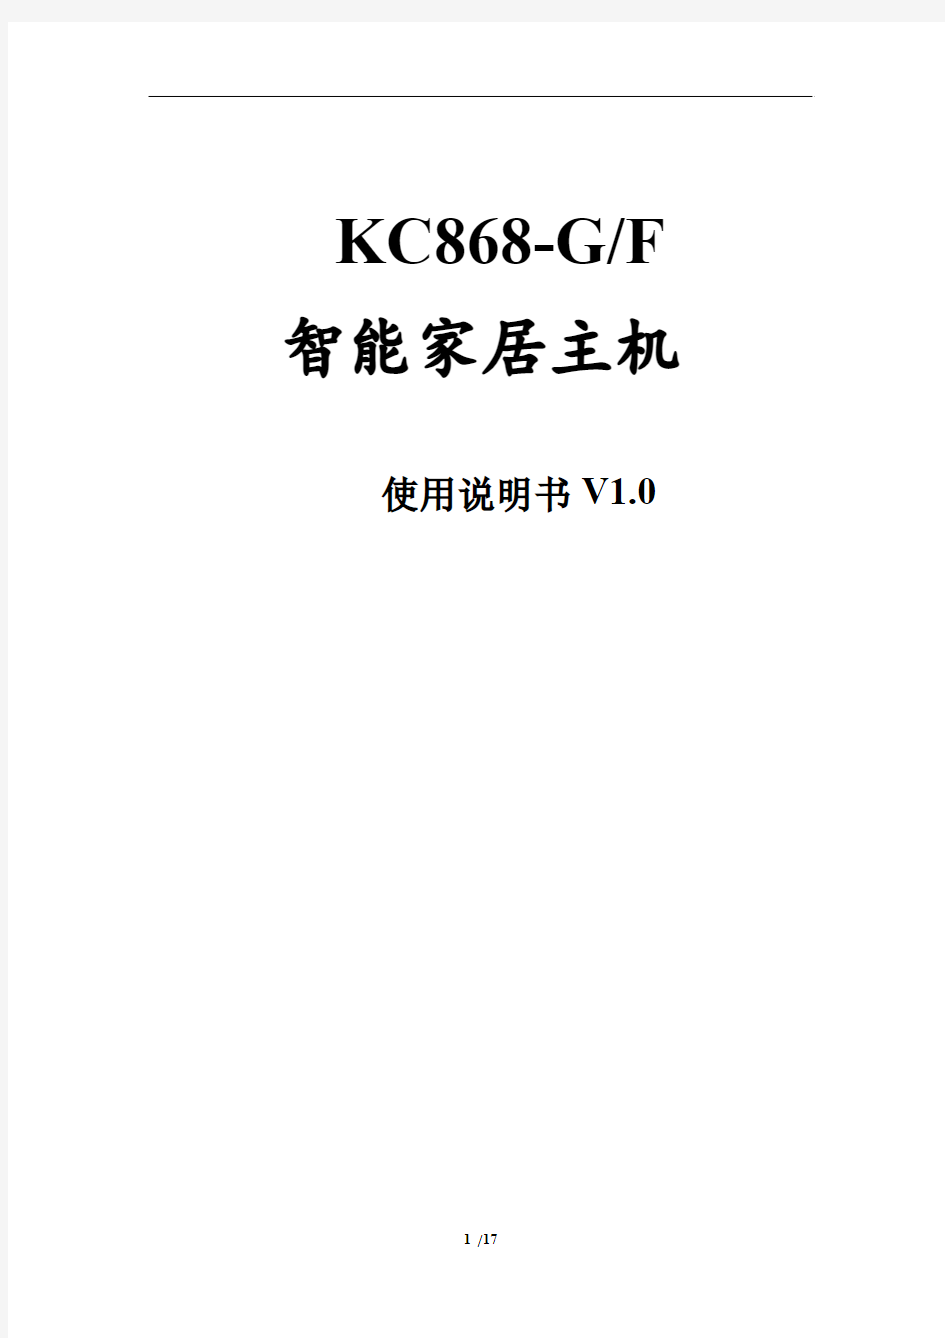 智能家居控制系统主机使用说明书(KC868-S KC868-G KC868-F)V1.0